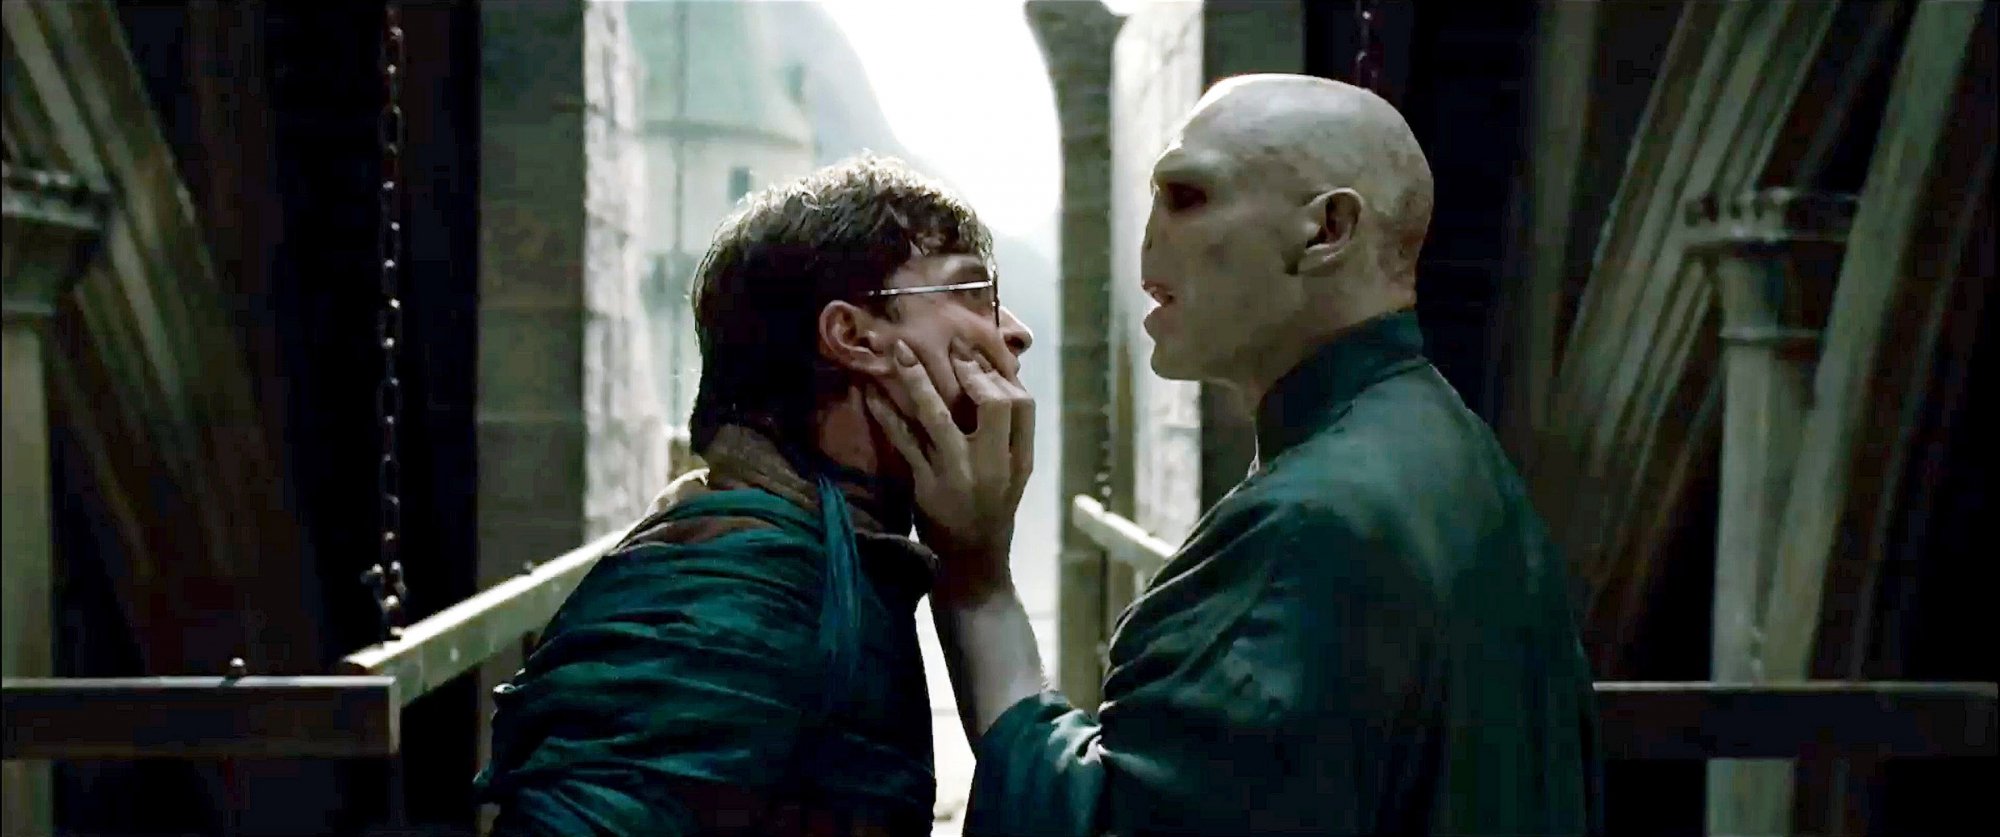 Daniel Radcliffe,étant Harry Potter, et Ralph Fiennes en Voldemort dans Harry Potter et les reliques de la mort - 2ème partie.